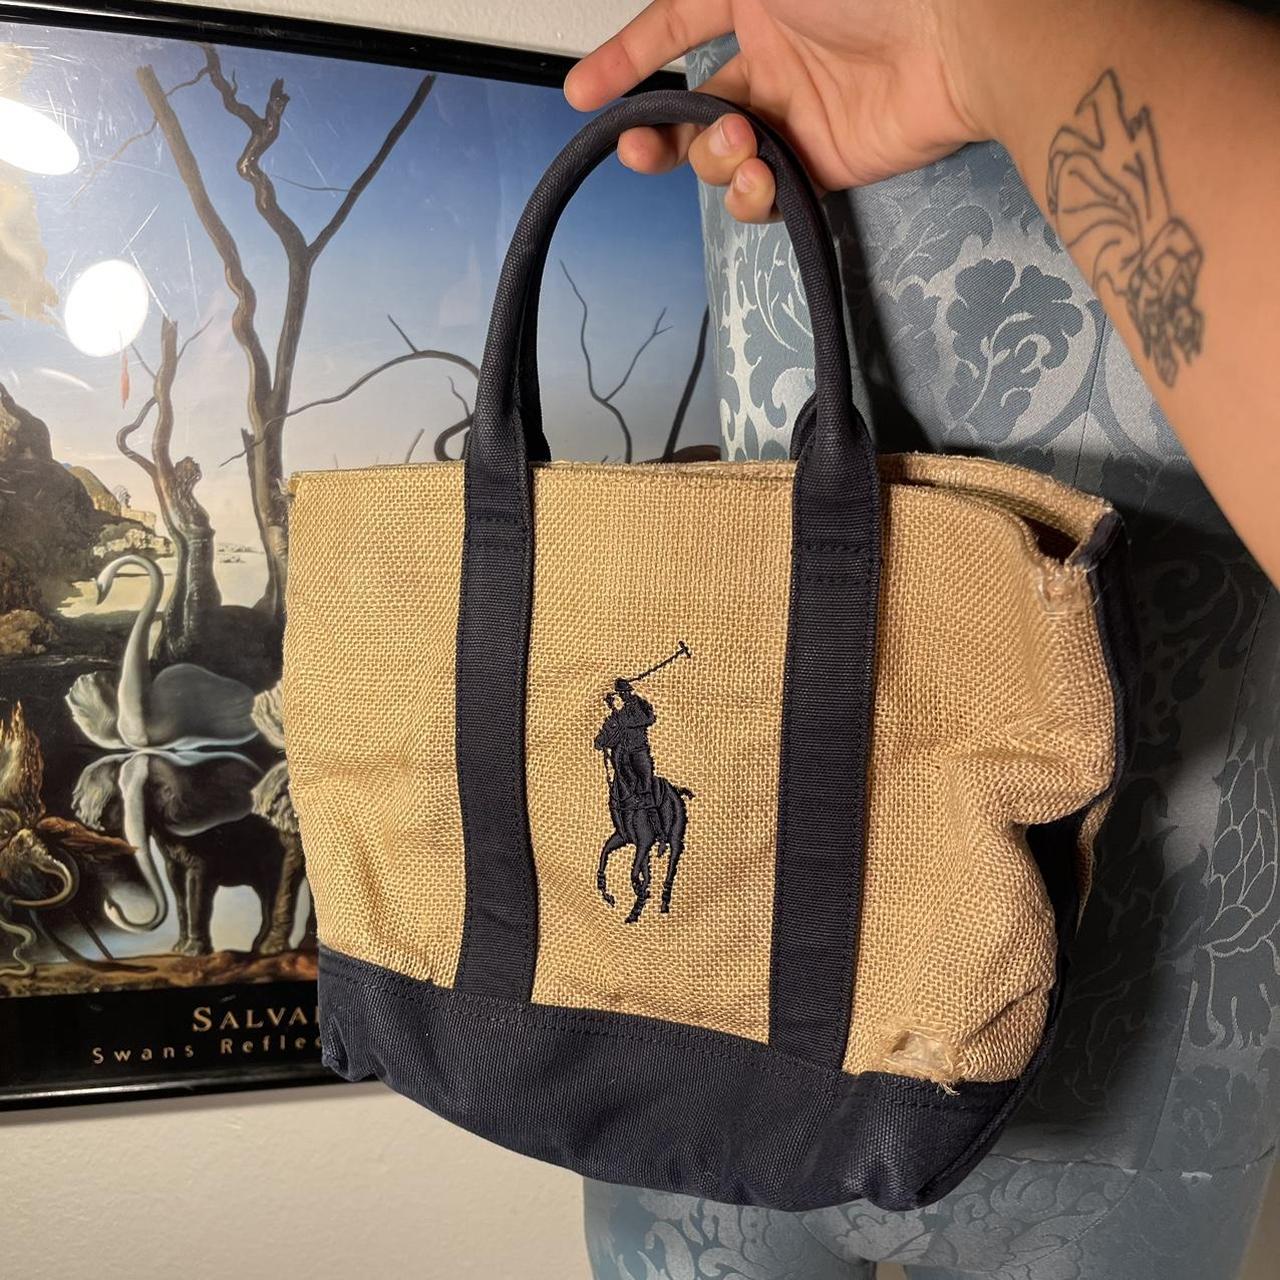 The vintage Lauren Ralph Lauren tote bag is an - Depop